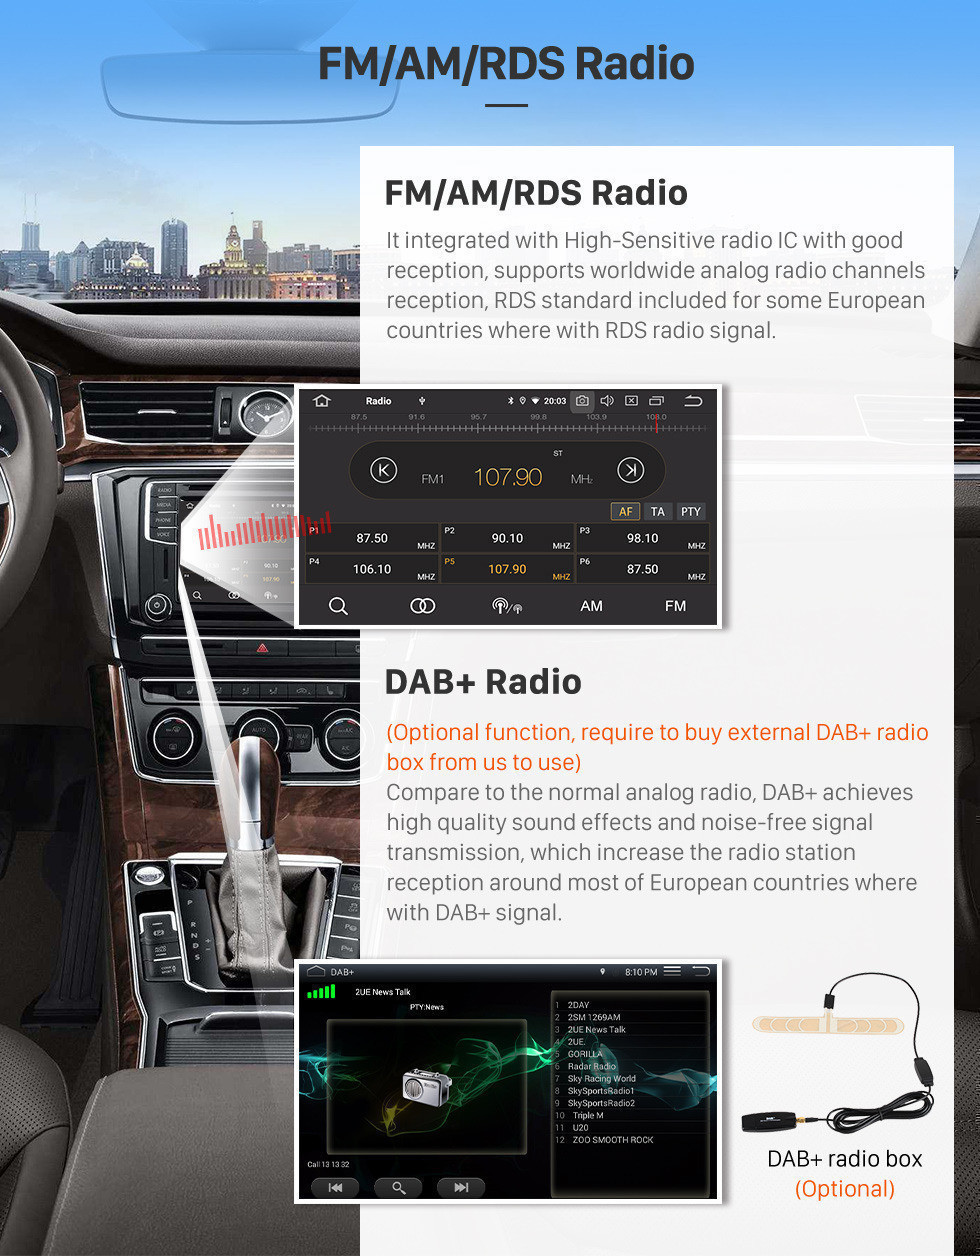 Seicane 10,1 polegadas 2012-2016 Nissan Slyphy Android 11.0 Sistema de Navegação GPS Autoradio MP3 4G WiFi USB 1080P Vídeo Auto A / V Câmera de Backup Espelho Link